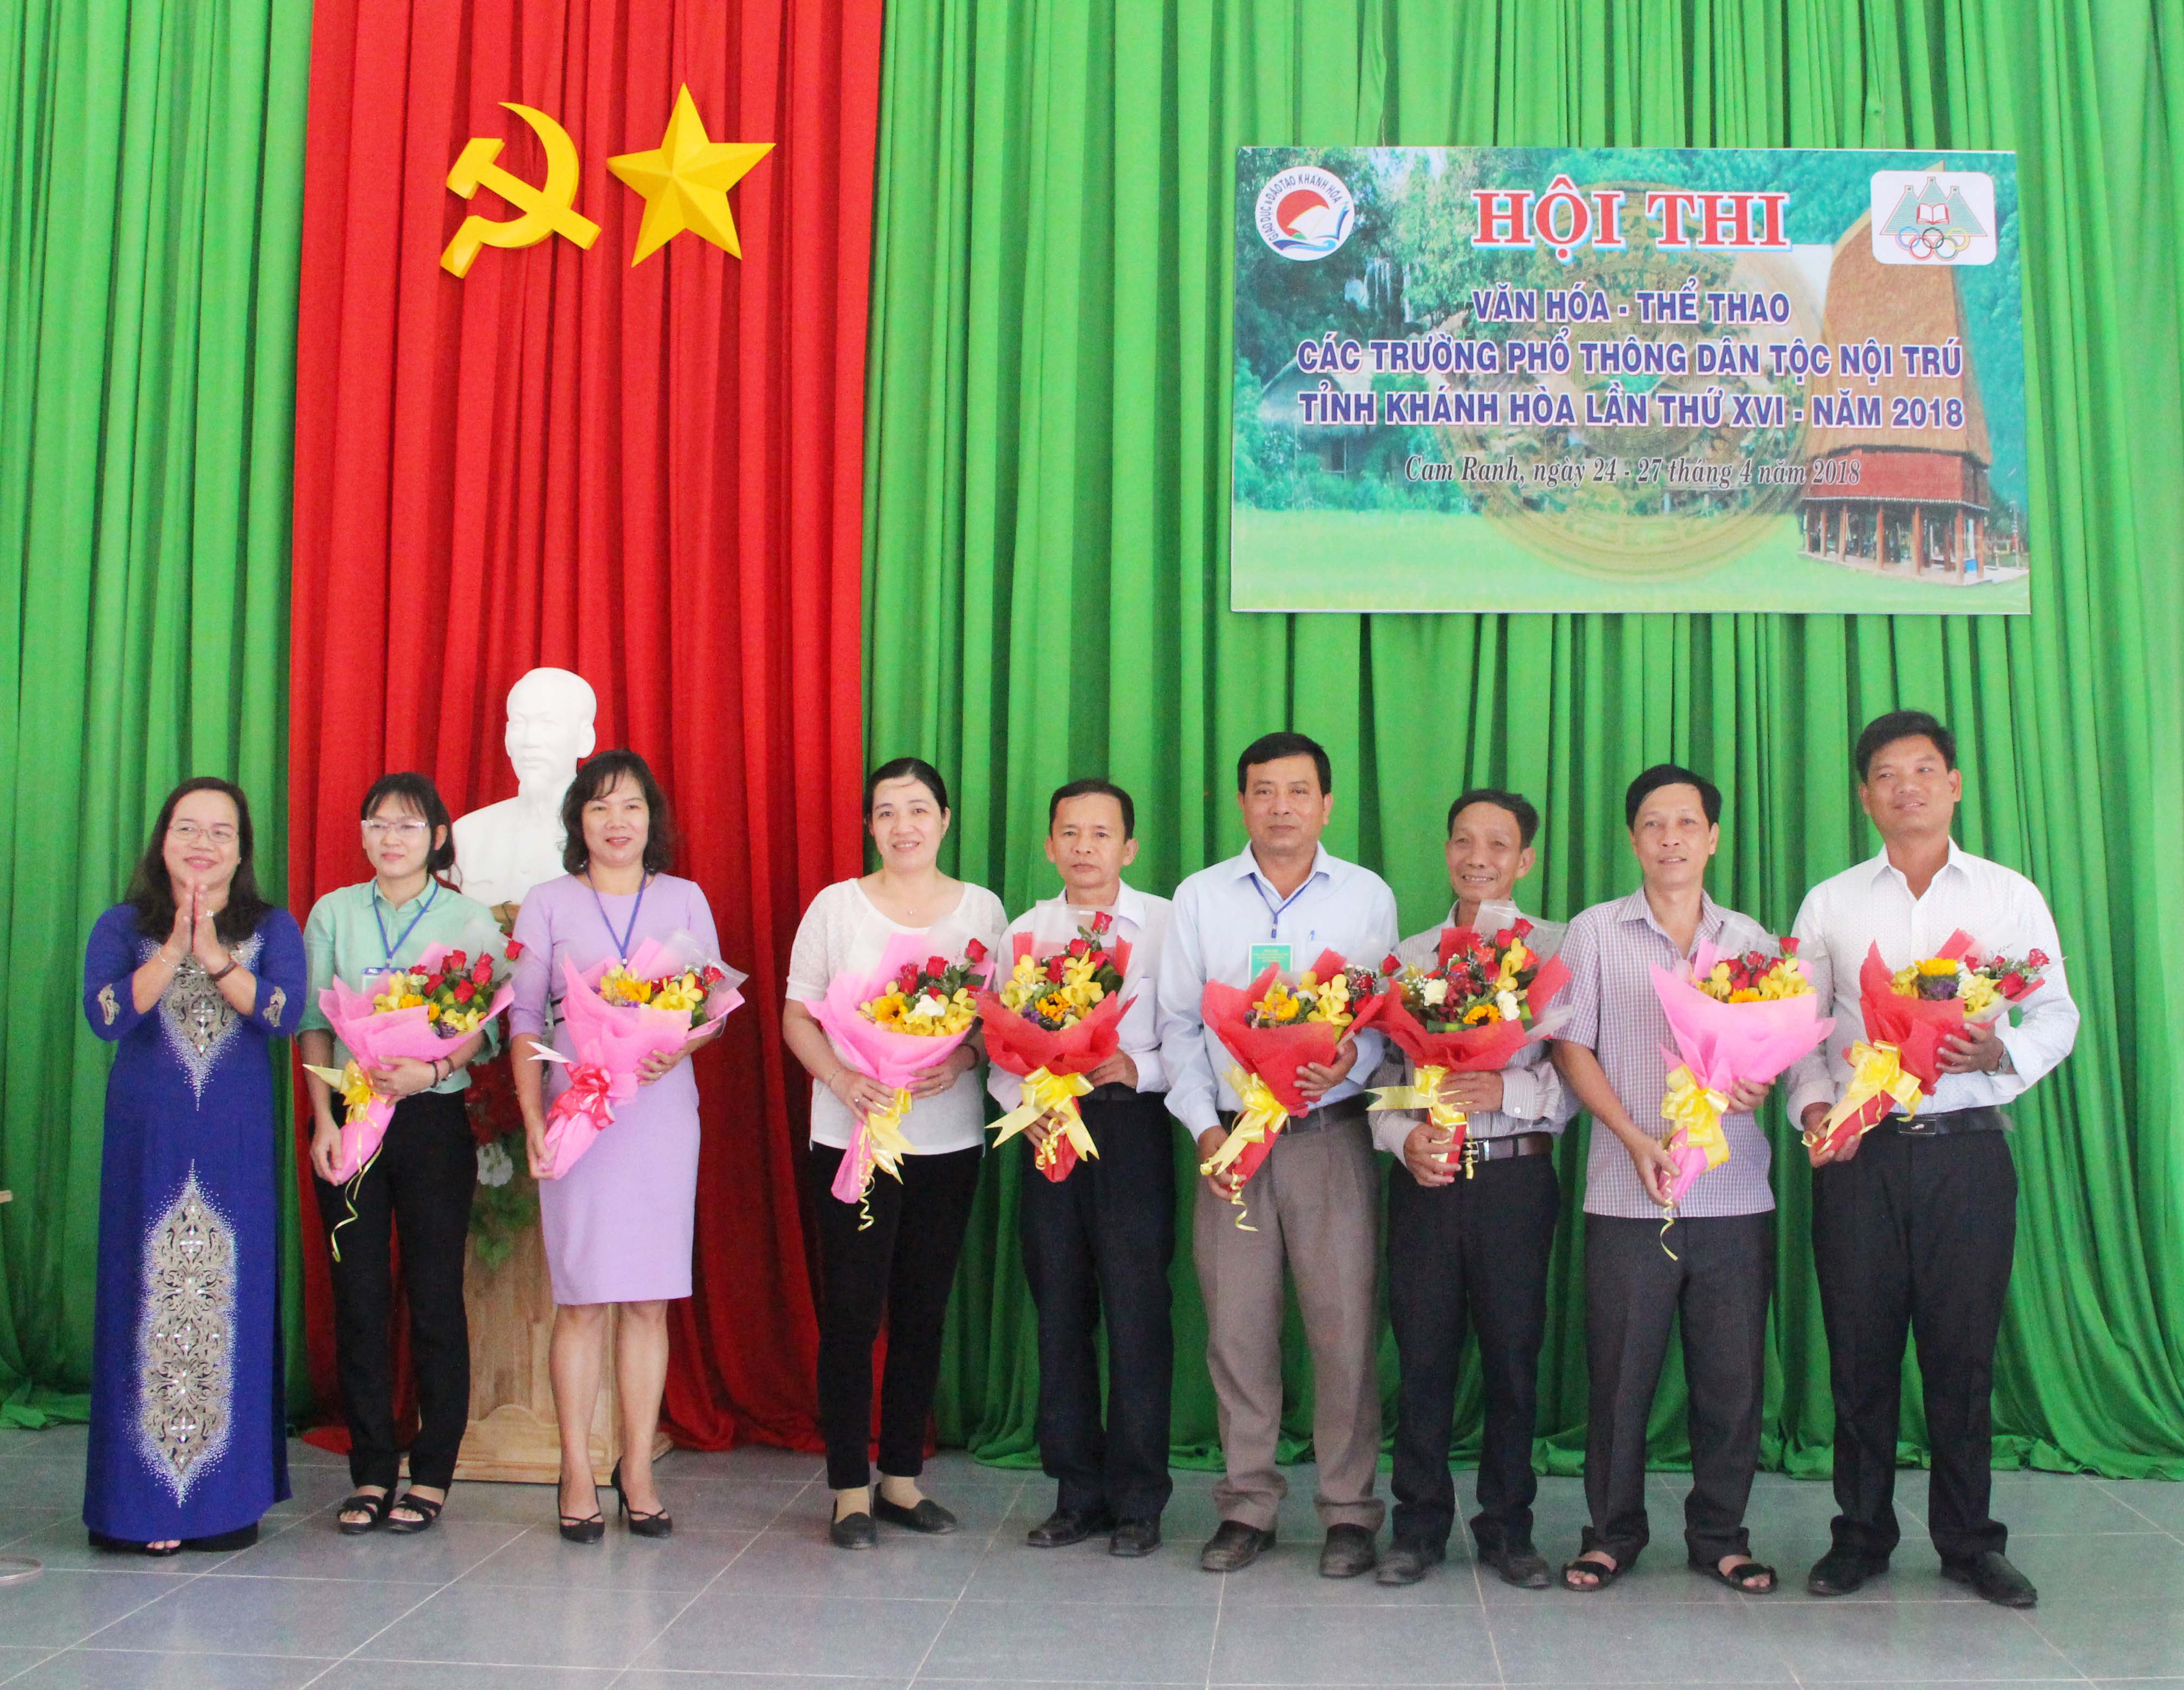 Tổng kết Hội thi Văn hóa - Thể thao các trường phổ thông DTNT tỉnh Khánh Hòa lần thứ XVI